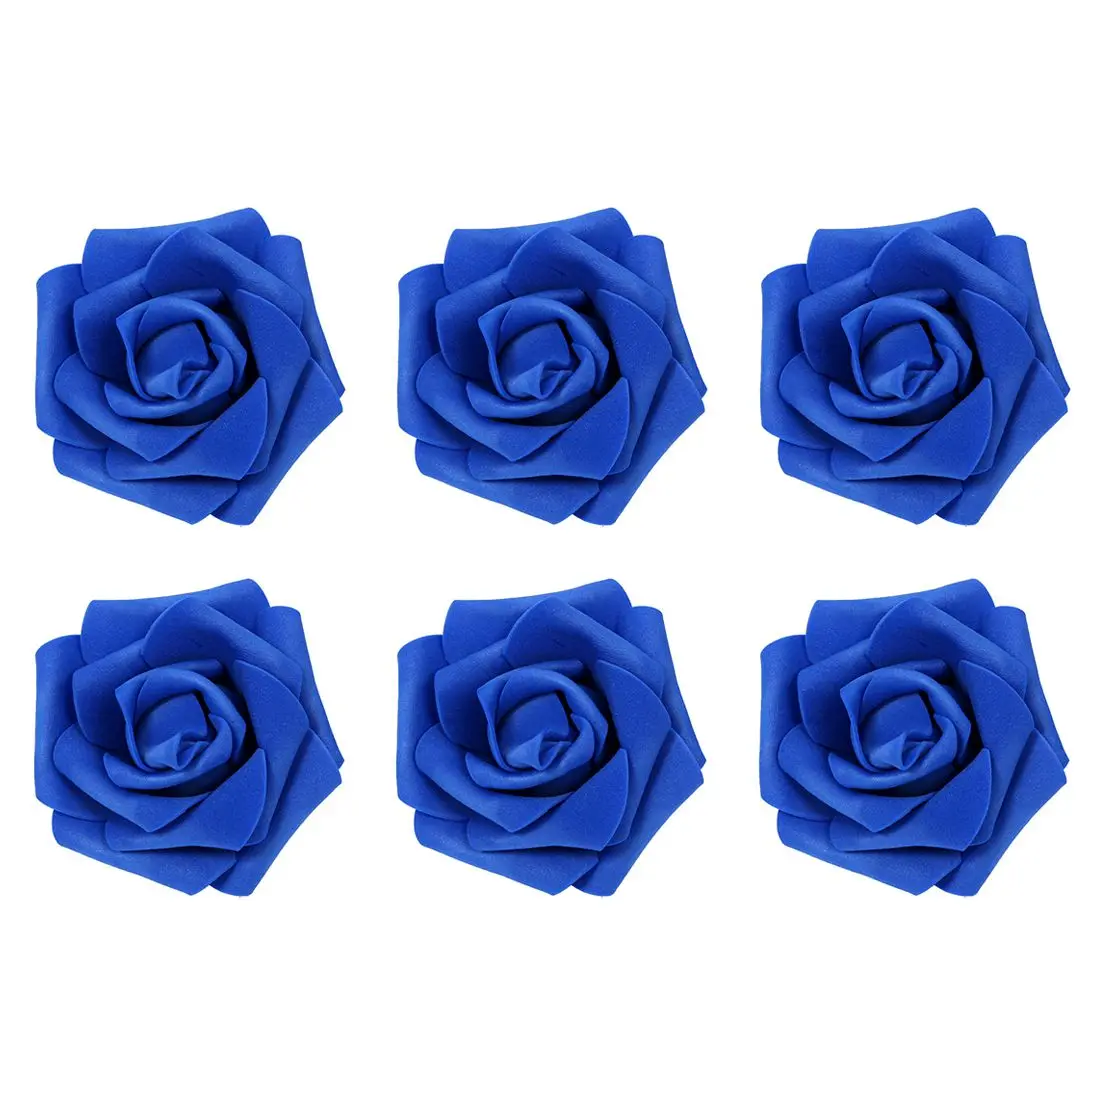 100 шт поролоновые бутоны для цветов розы, украшения для свадебной вечеринки, искусственные цветы, сделай сам, Королевский синий цвет